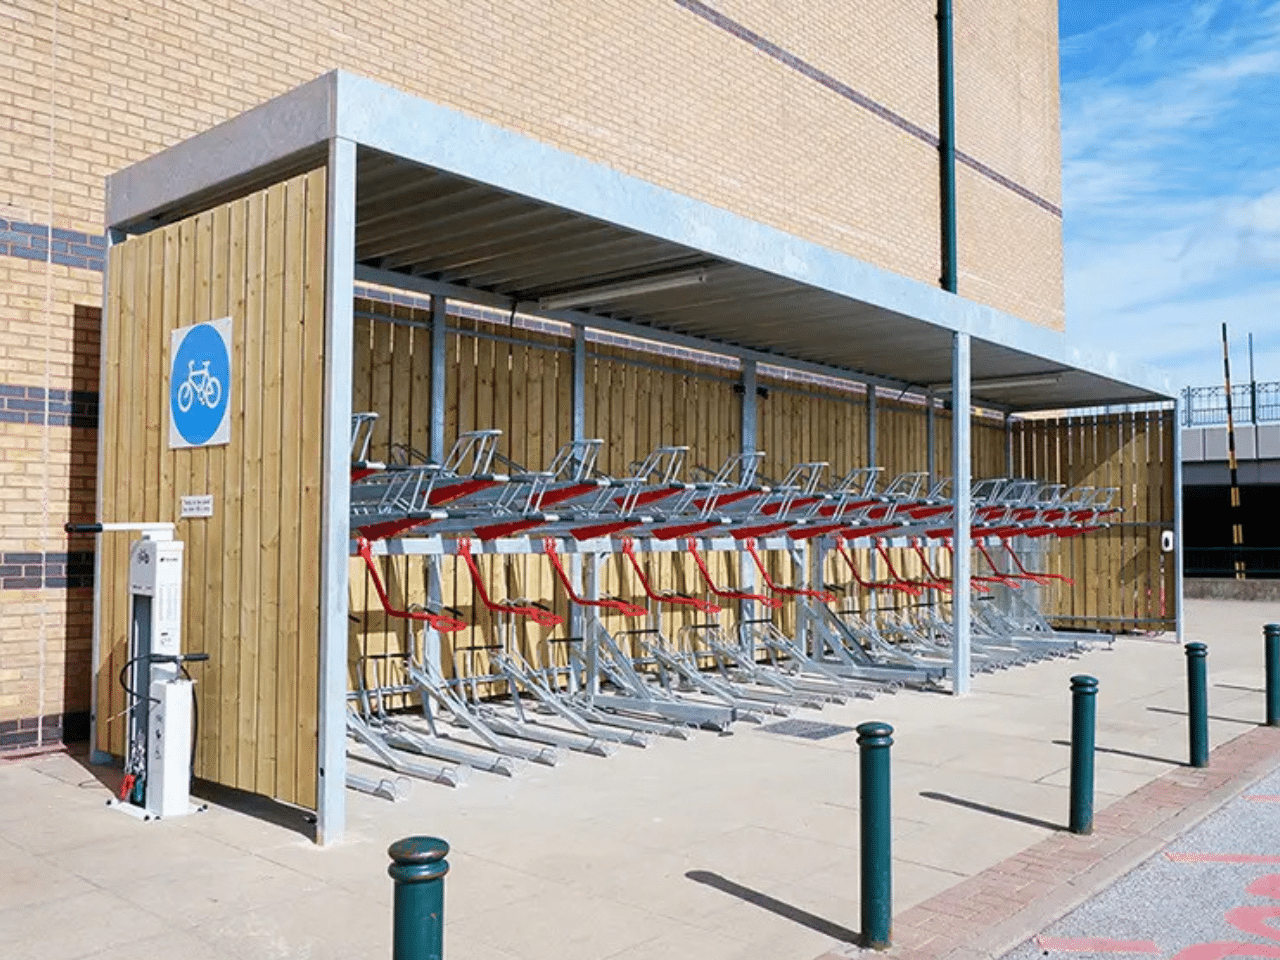 Abri vélo Bosquet ByCommute avec arceaux duo en double étage à l'intérieur, offrant une solution de stationnement vélos sécurisée et optimisée pour les entreprises et les espaces publics. Abri en bois avec une capacité de stationnement élevée.